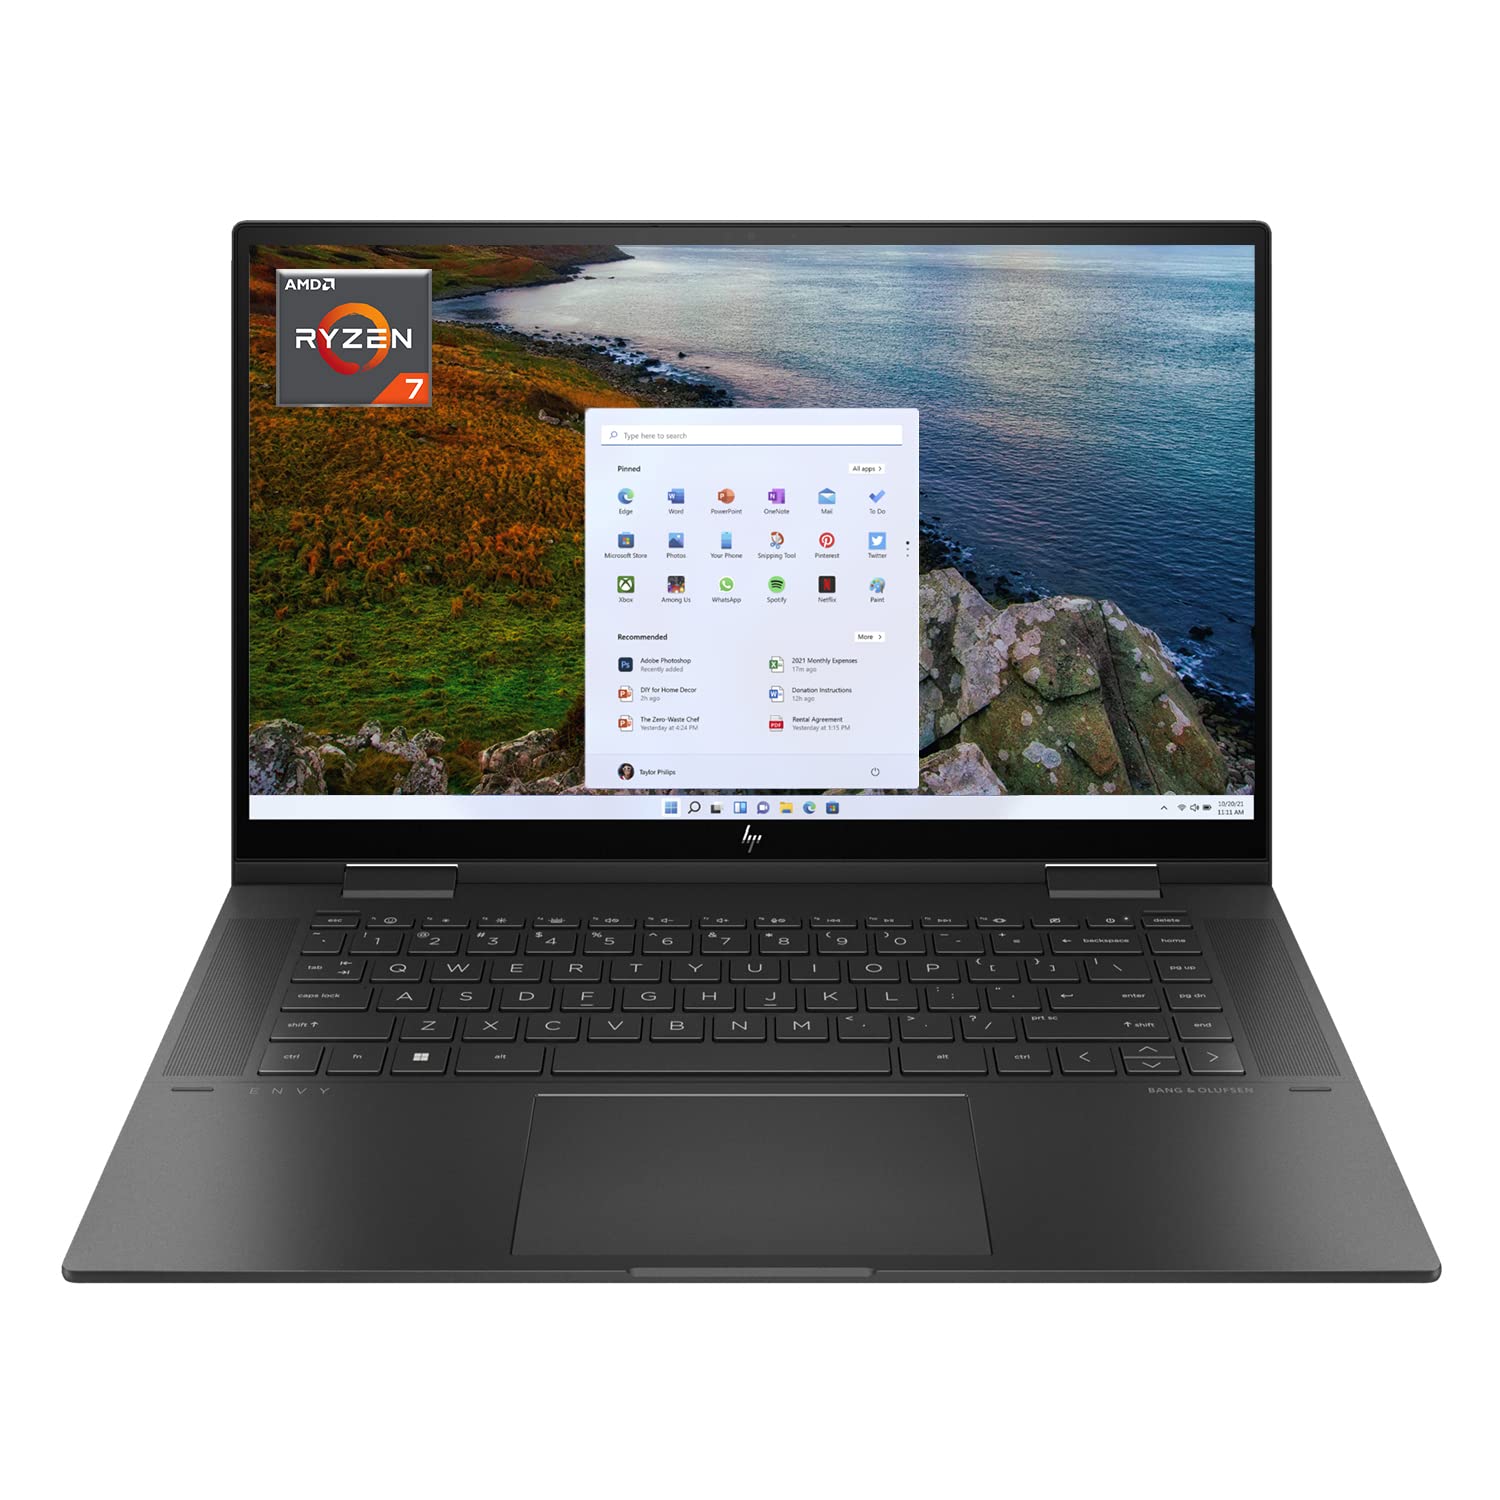 HP Envy X360 2-in-1 Laptop, 15.6" IPS Touchscreen, AMD Ryzen 7 5825U Processor, Backlit Keyboard, Fingerprint Reader, Wi-Fi 6, Audio by Bang & Olufsen, Windows 11 (16GB RAM | 512GB PCIe SSD)